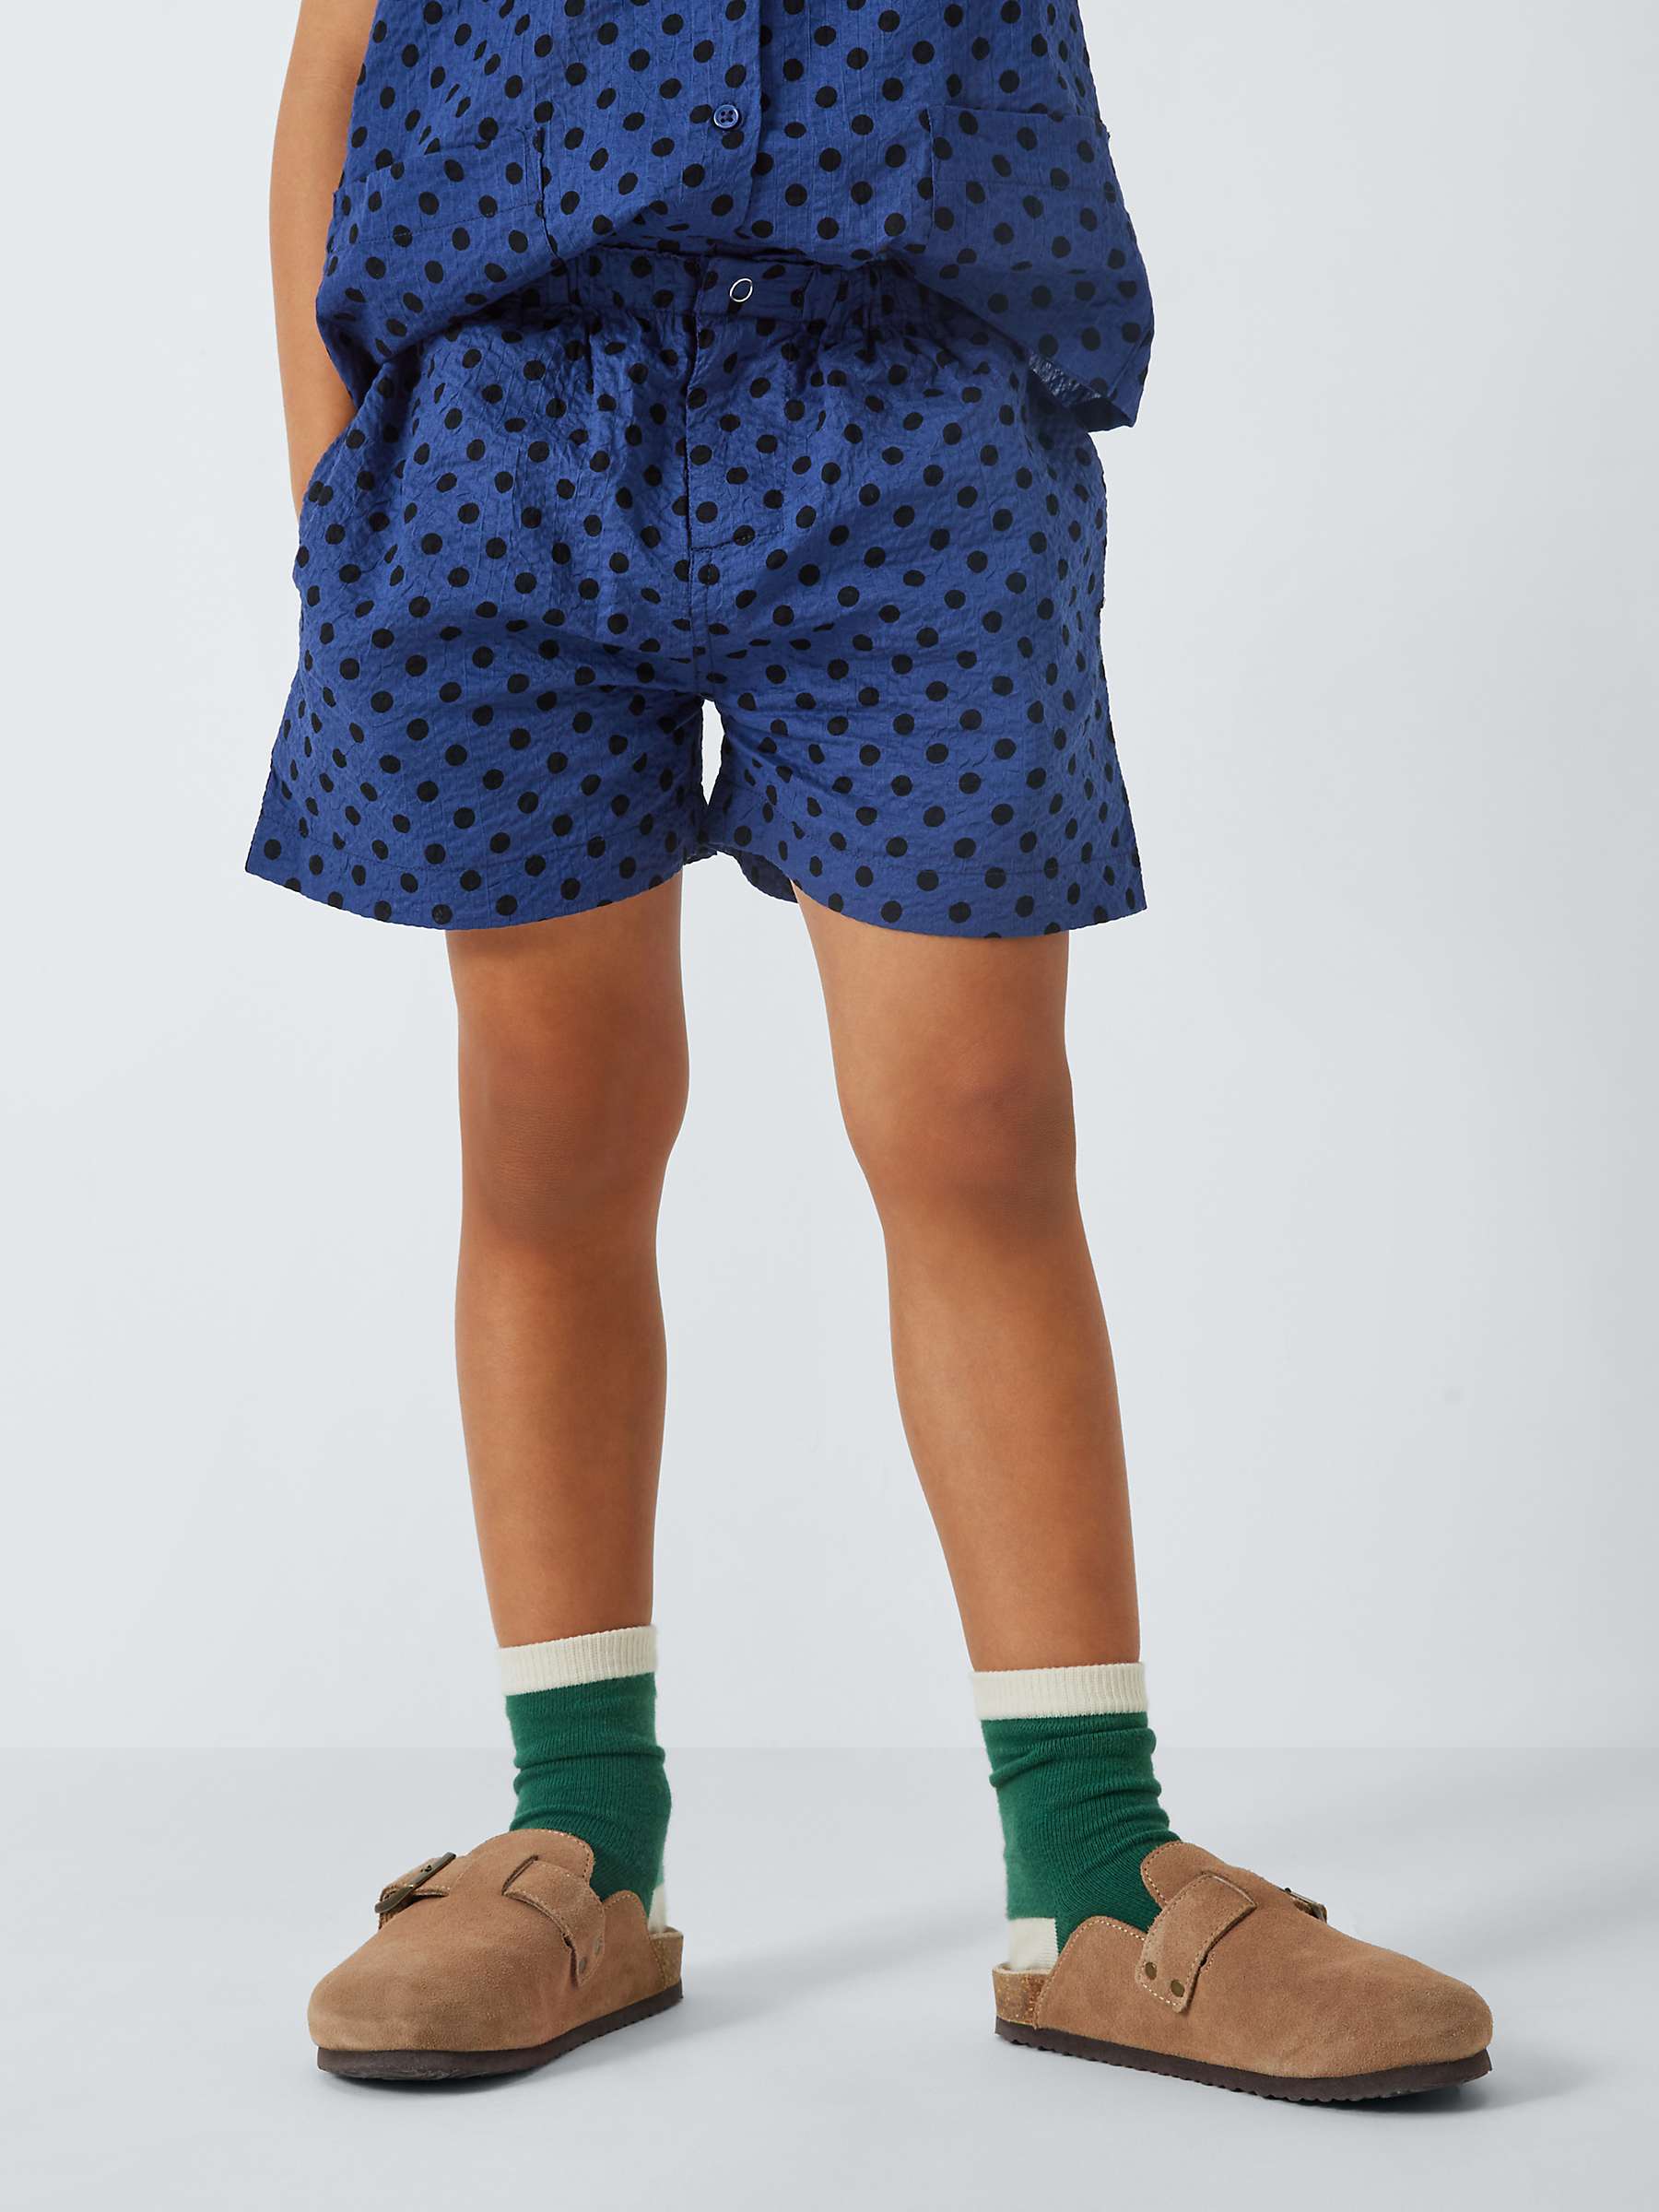 Buy Caramel Kids' Apium Polka Dot Shorts, Navy Online at johnlewis.com